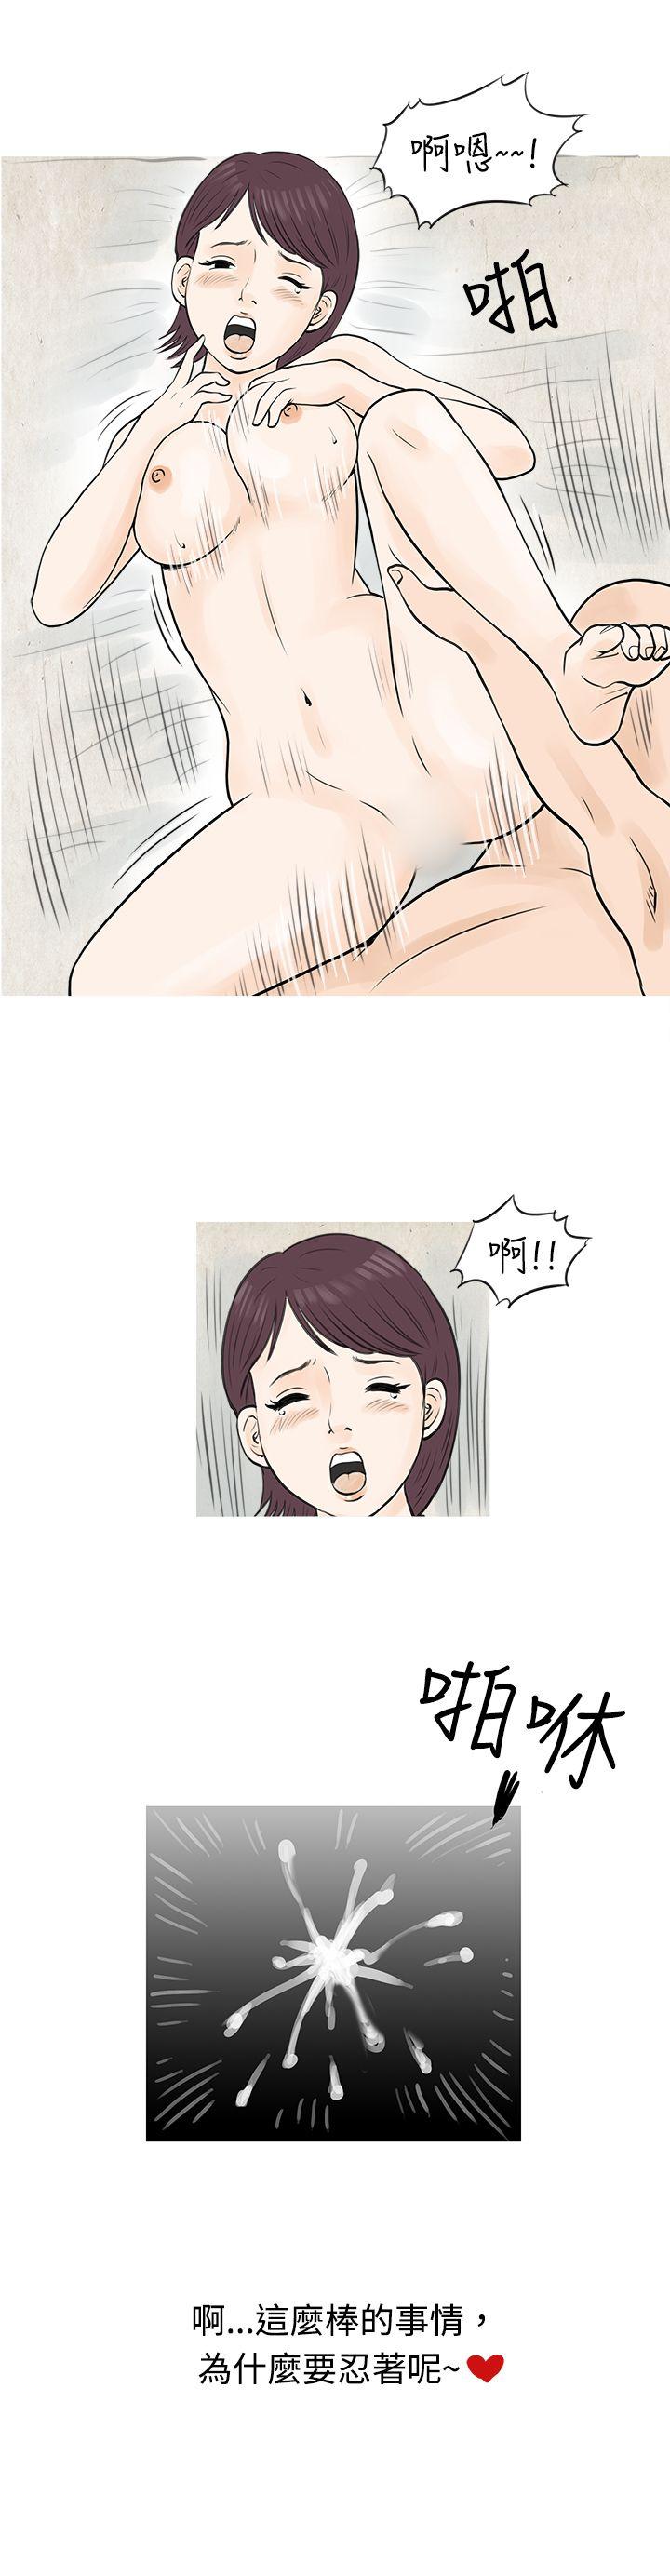 韩国污漫画 秘密Story 到健身房解决需求(下) 12